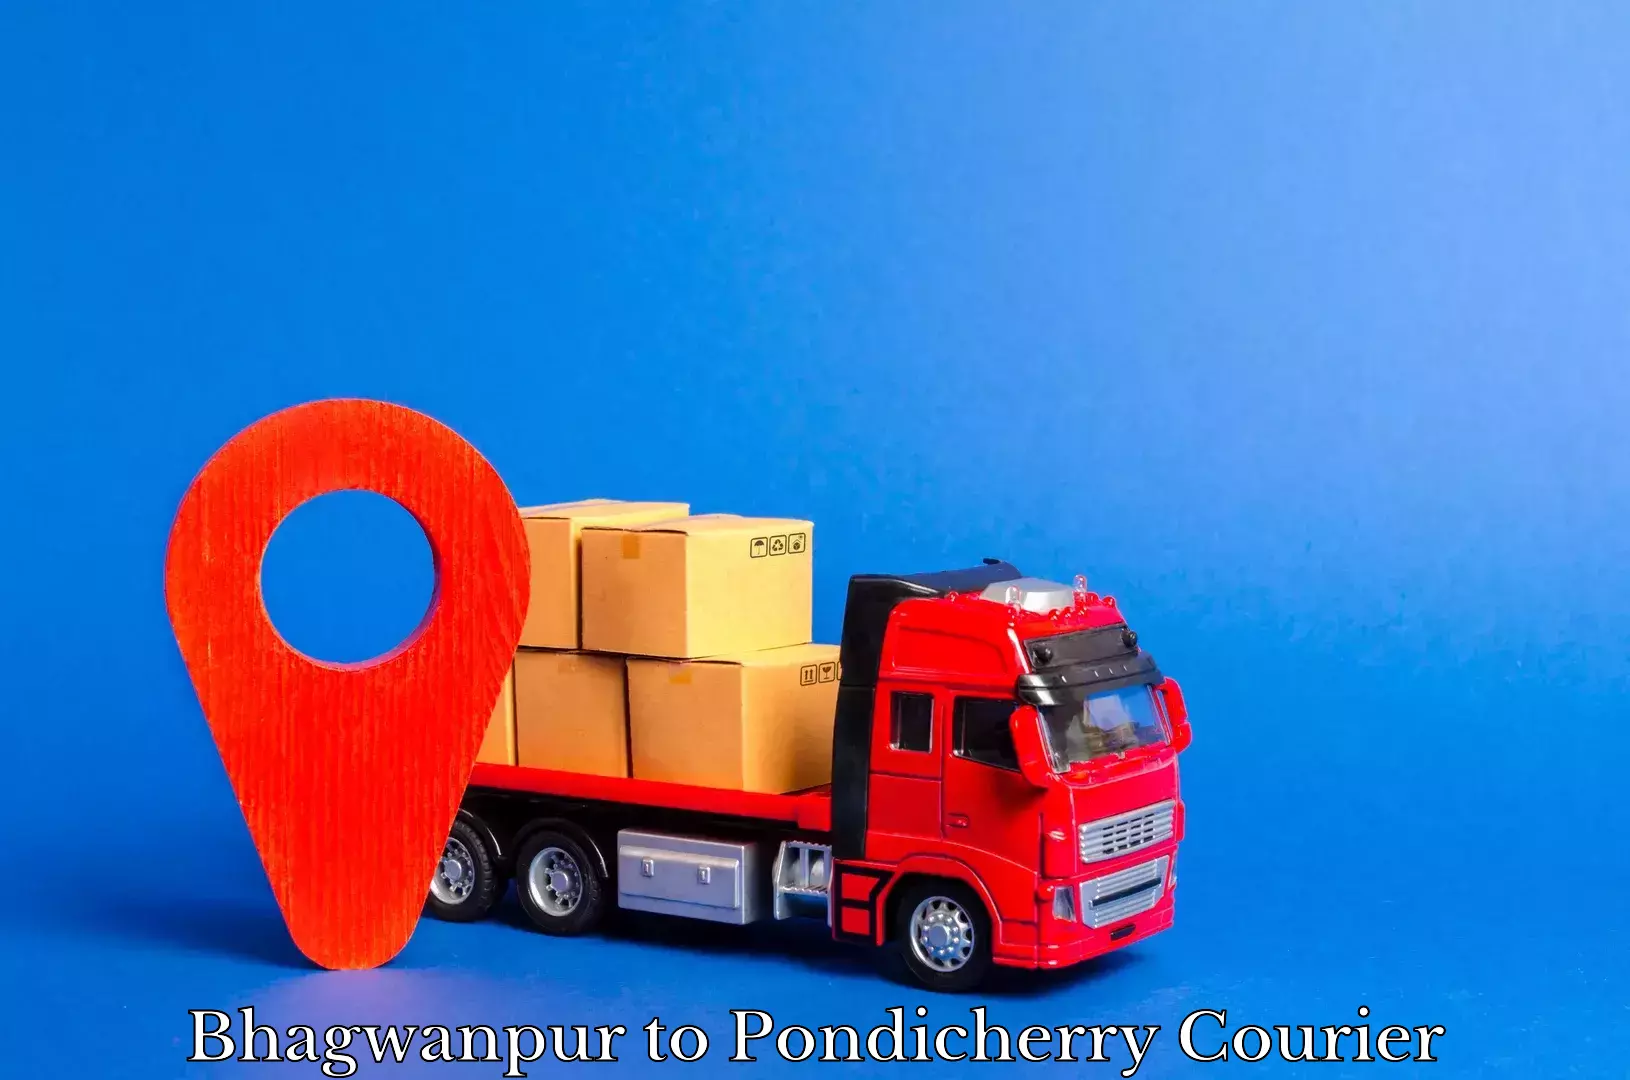 Next-generation courier services Bhagwanpur to Pondicherry